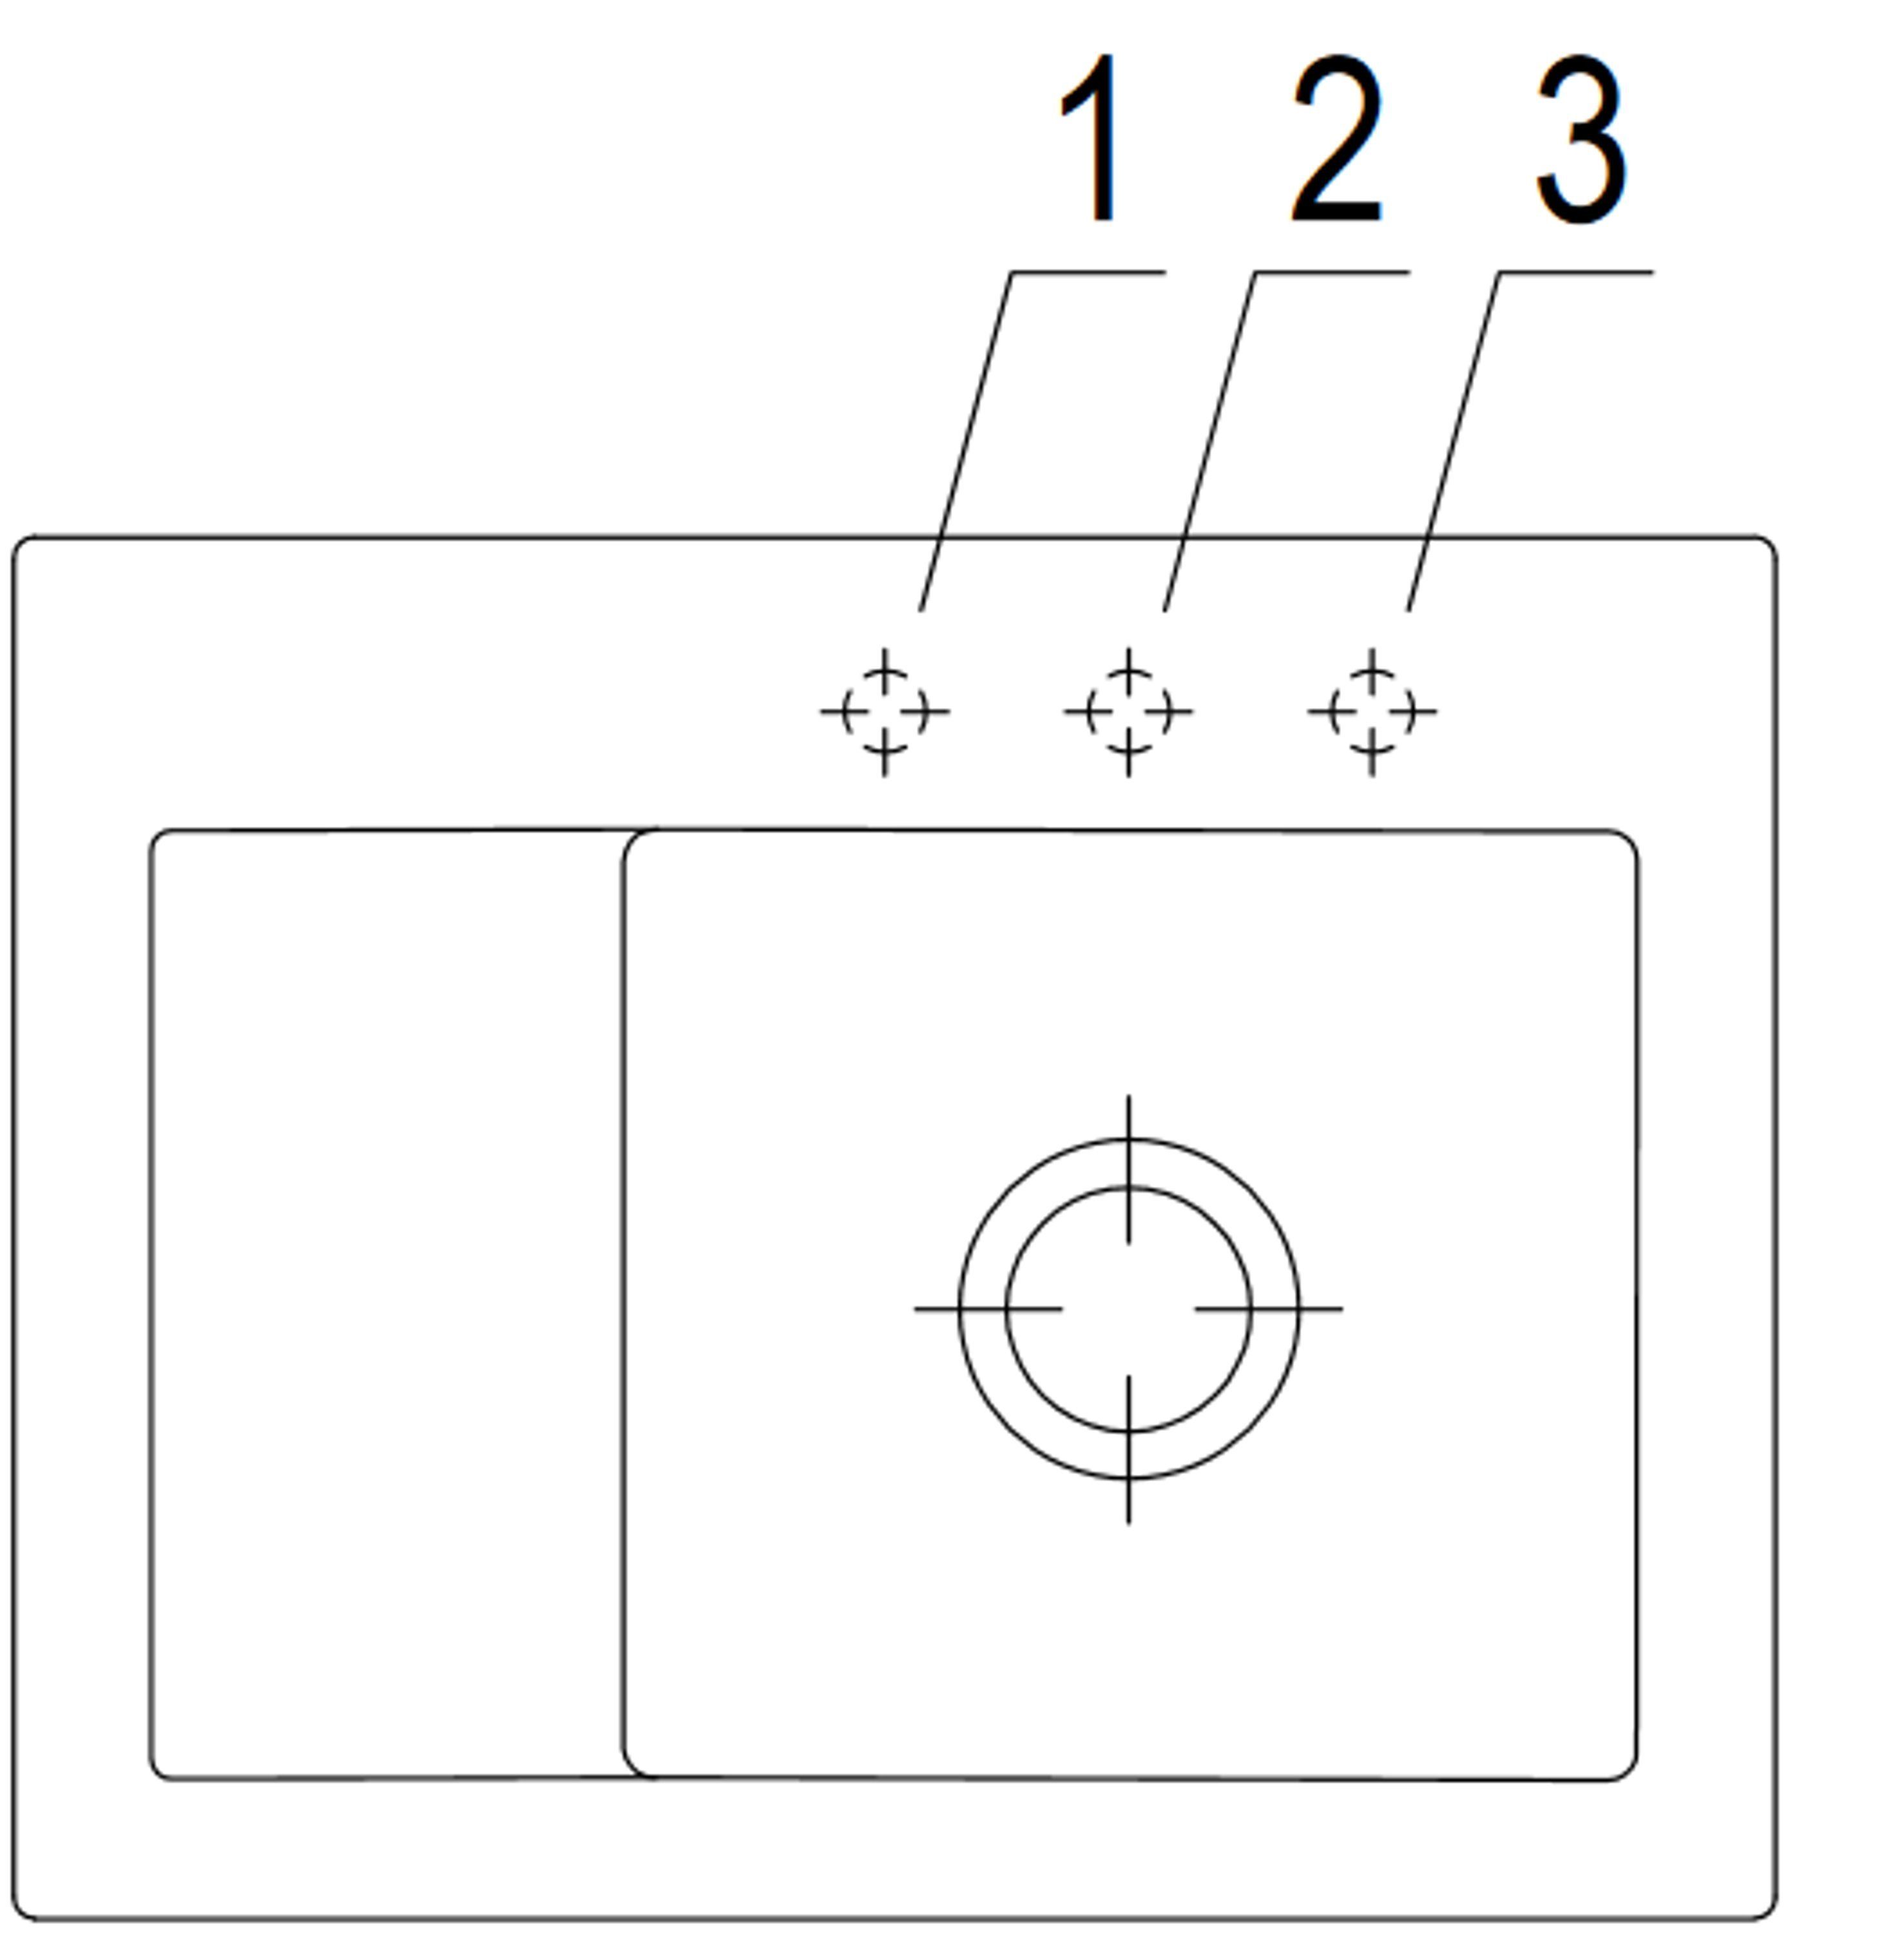 Villeroy & Boch Küchenspüle 3313 cm, möglich Subway und R1, Serie, rechts Becken 65/22 links 02 Rechteckig, Compact